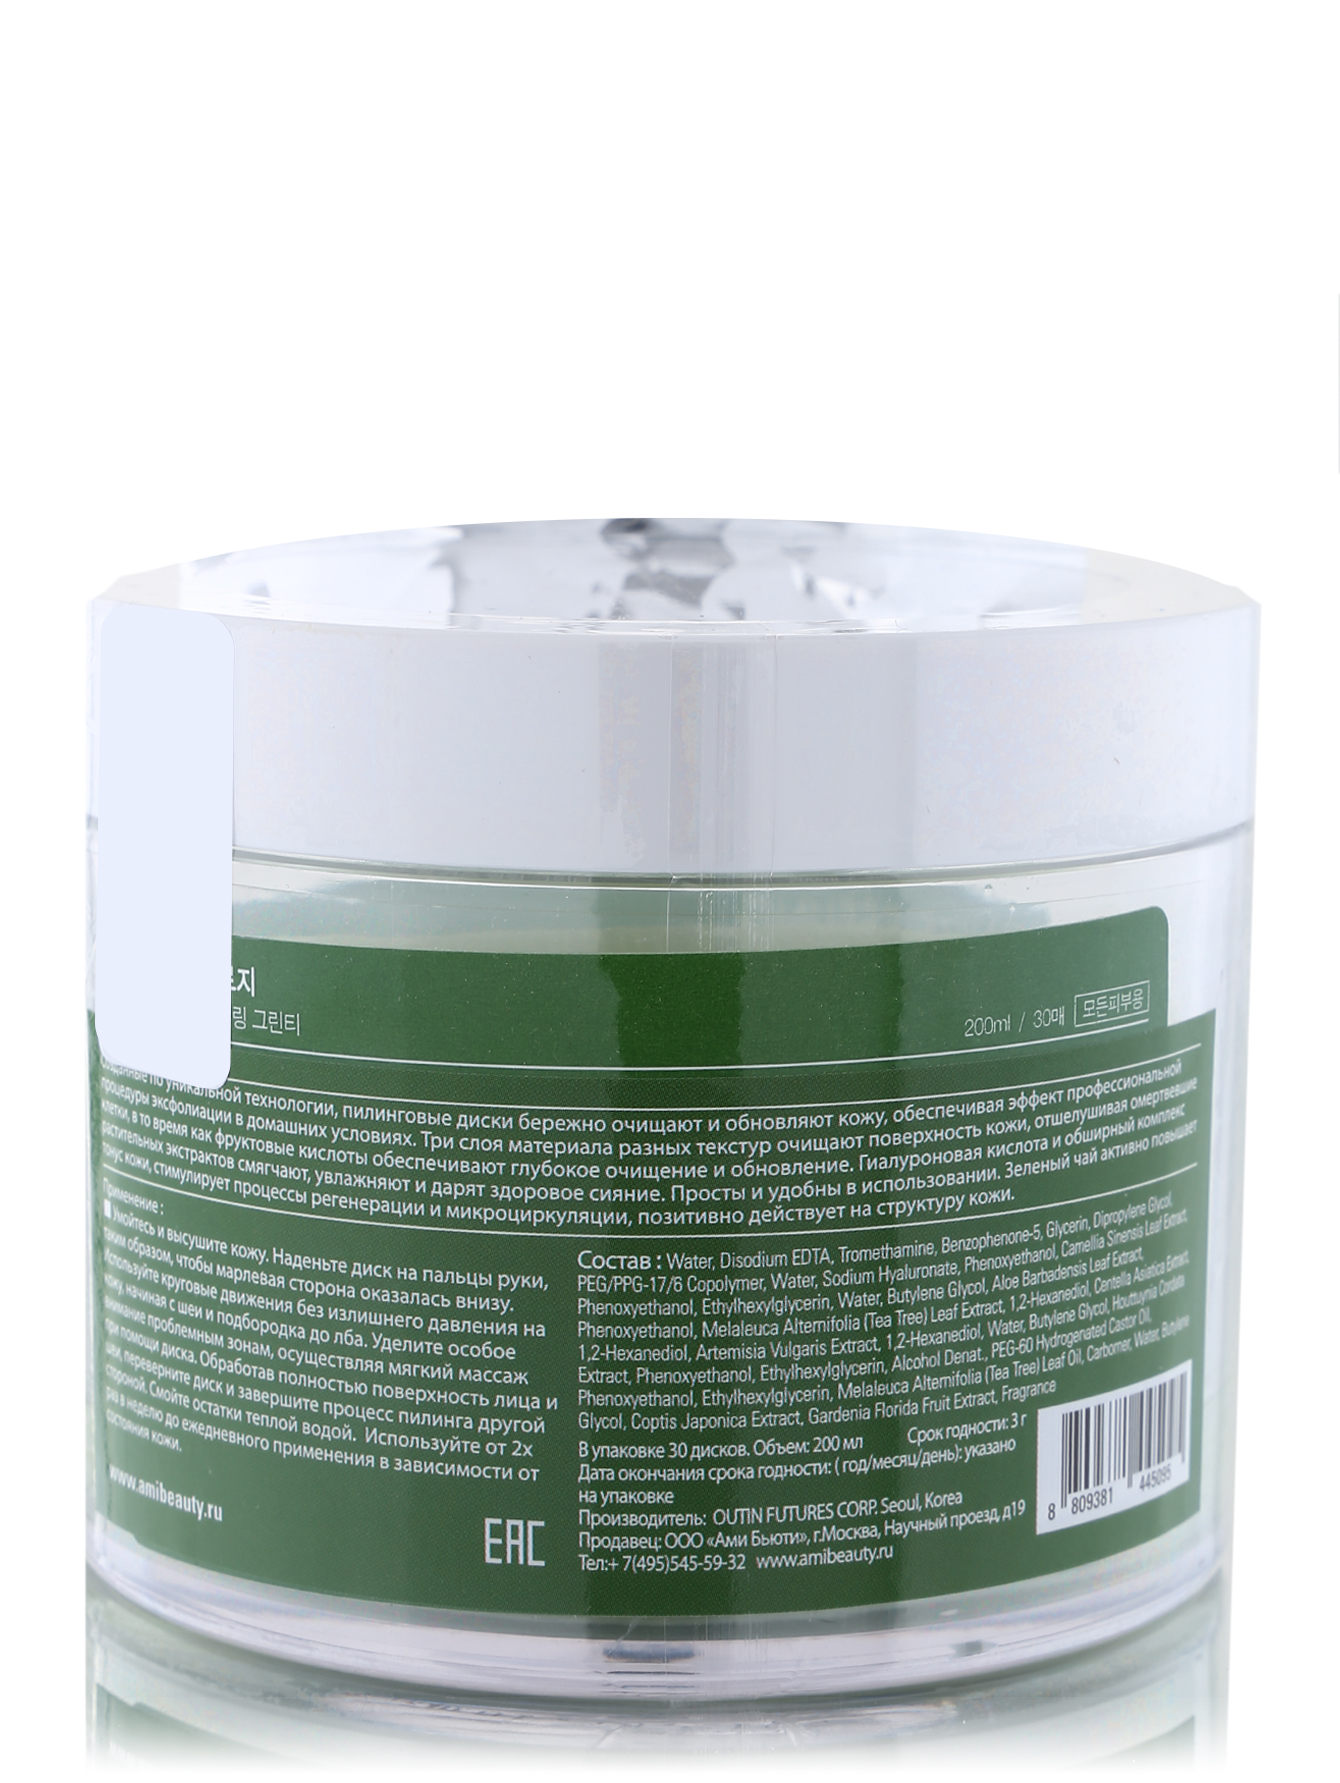  Пилинговые диски - Green tea, 200ml - Обтравка1